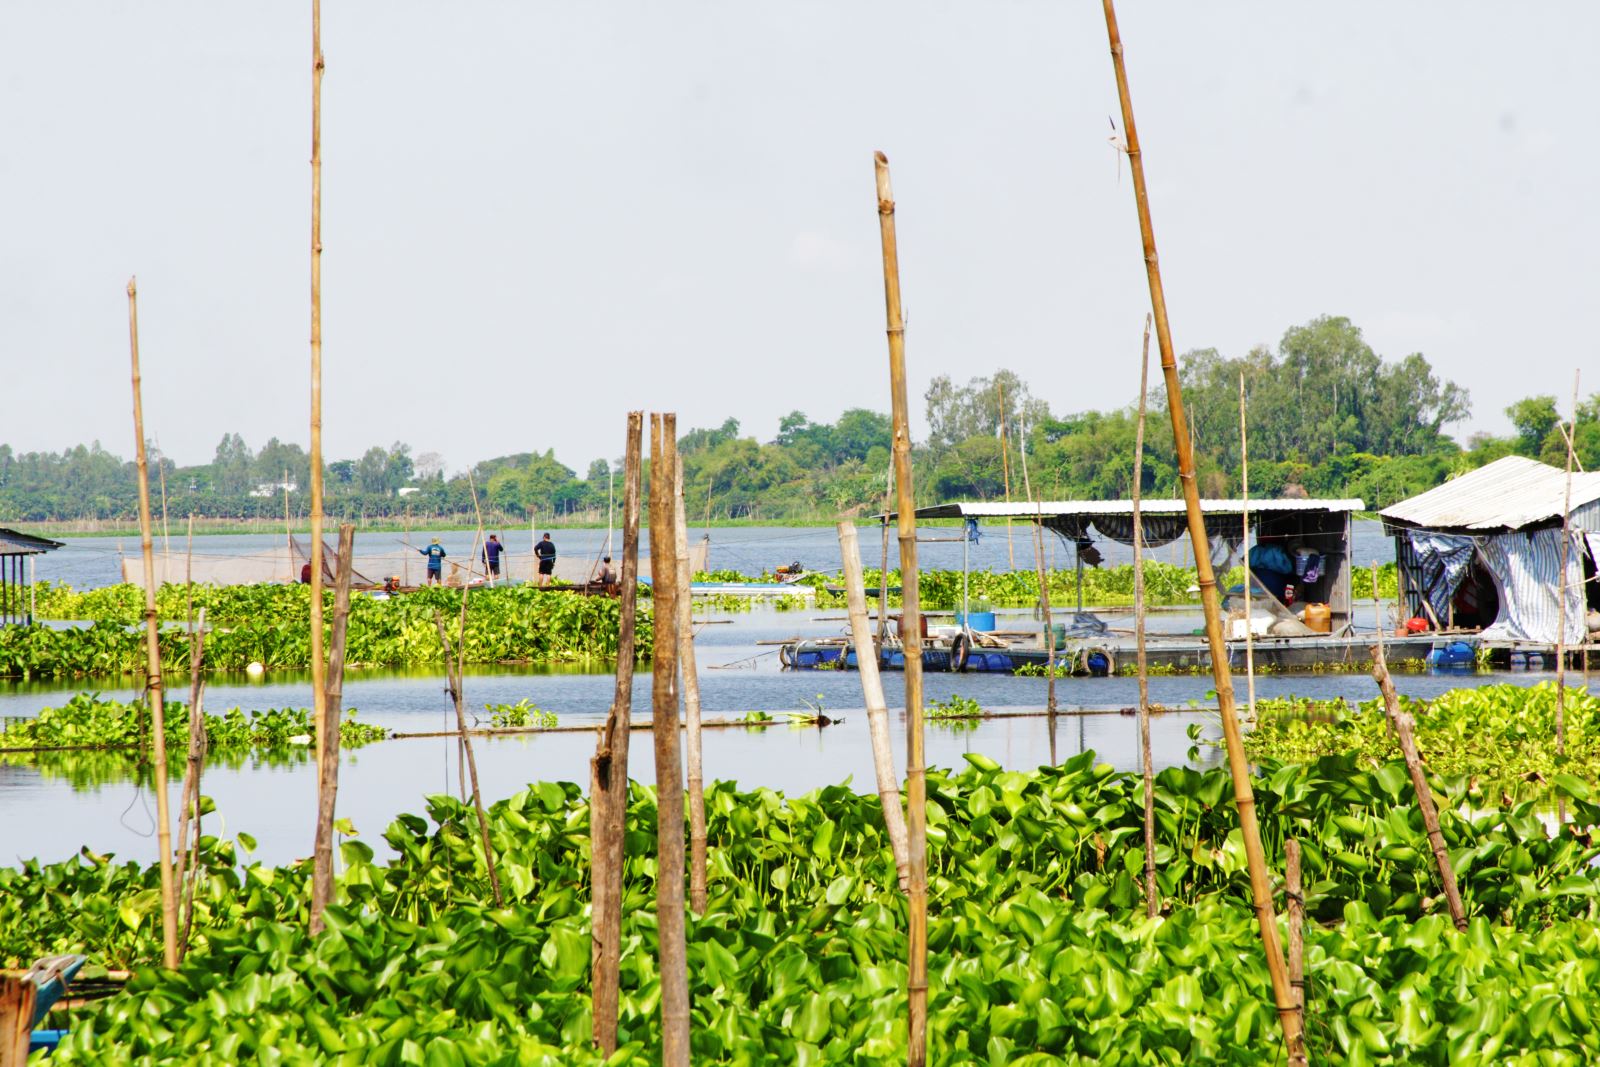 Hiện nay, bên cạnh đánh bắt cá tự nhiên, người dân địa phương còn nuôi trồng thủy sản theo kiểu lồng bè.